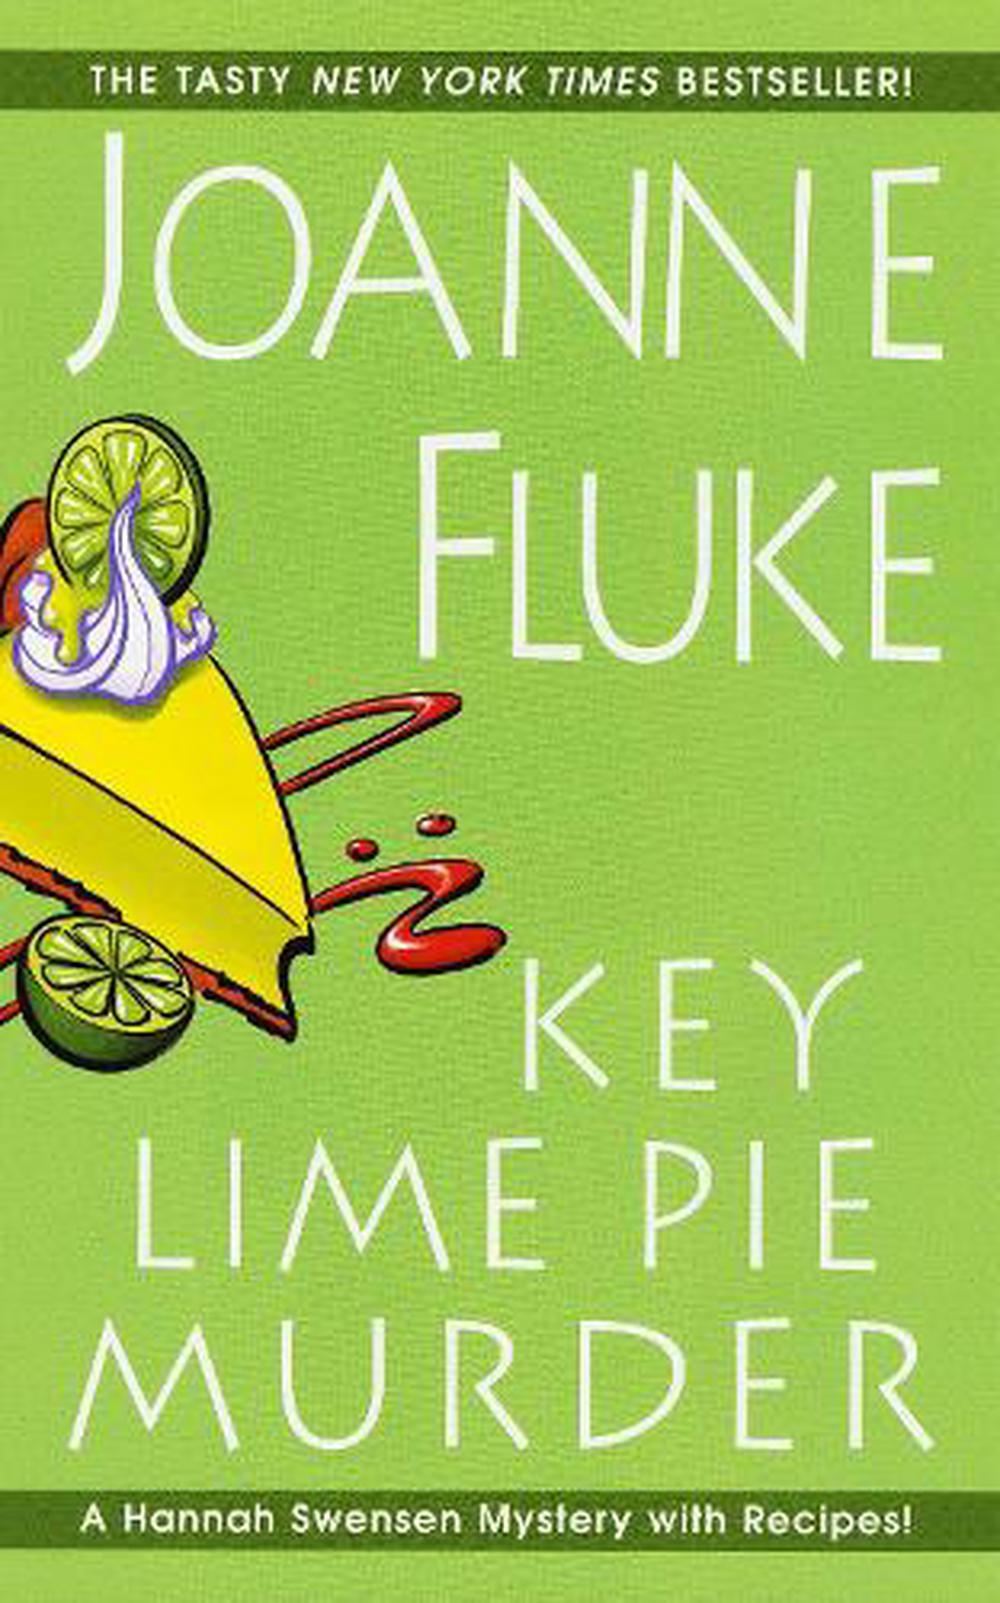 Key Lime Pie Murder by Joanne Fluke (English) Mass Market Paperback